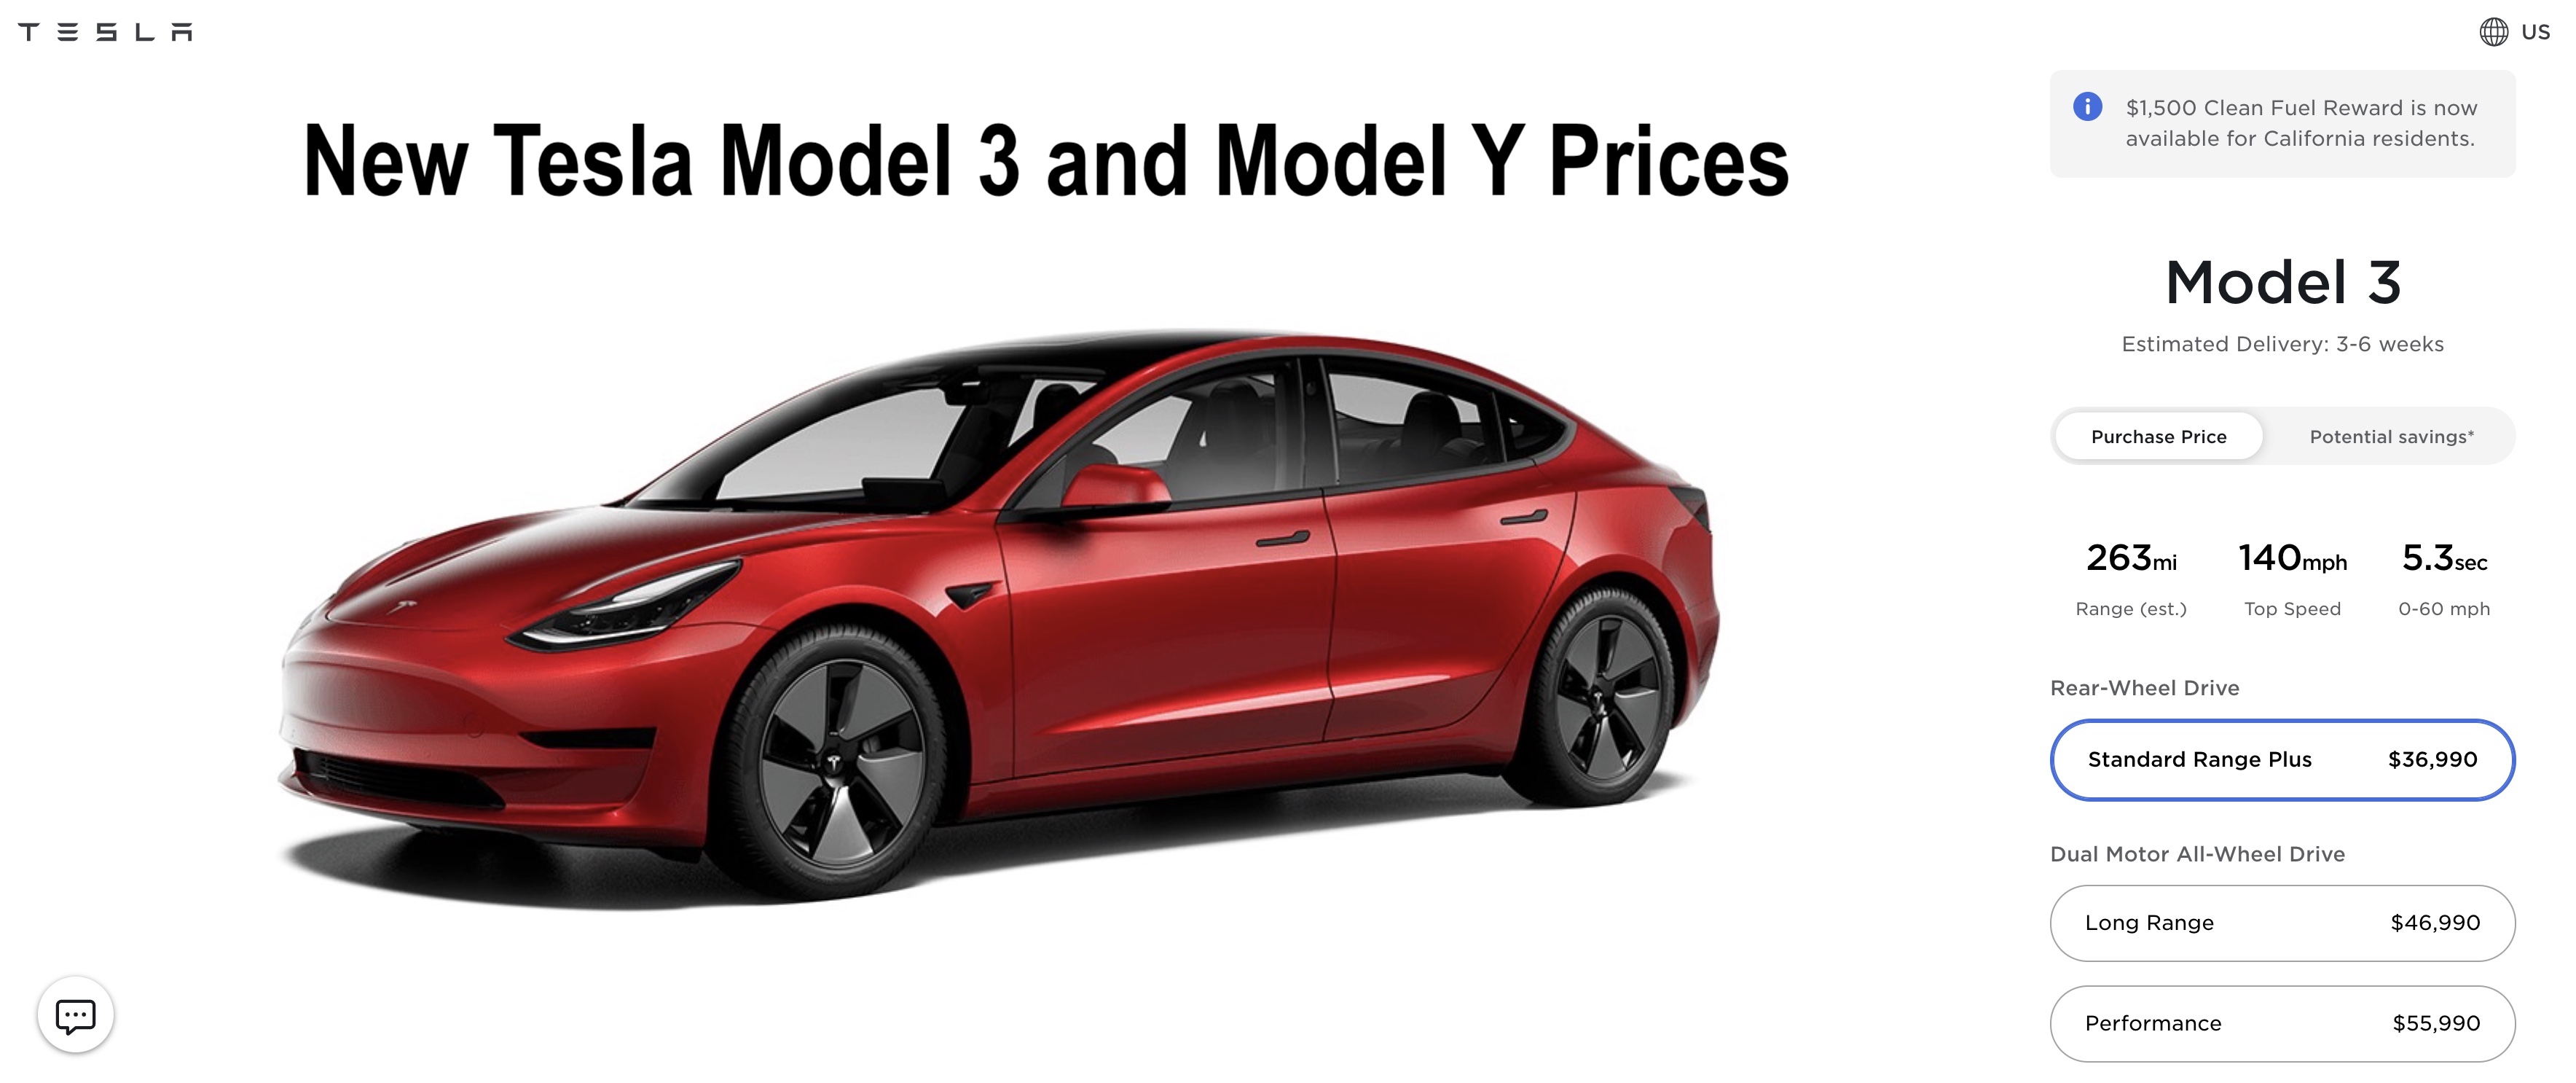 Tesla model y price